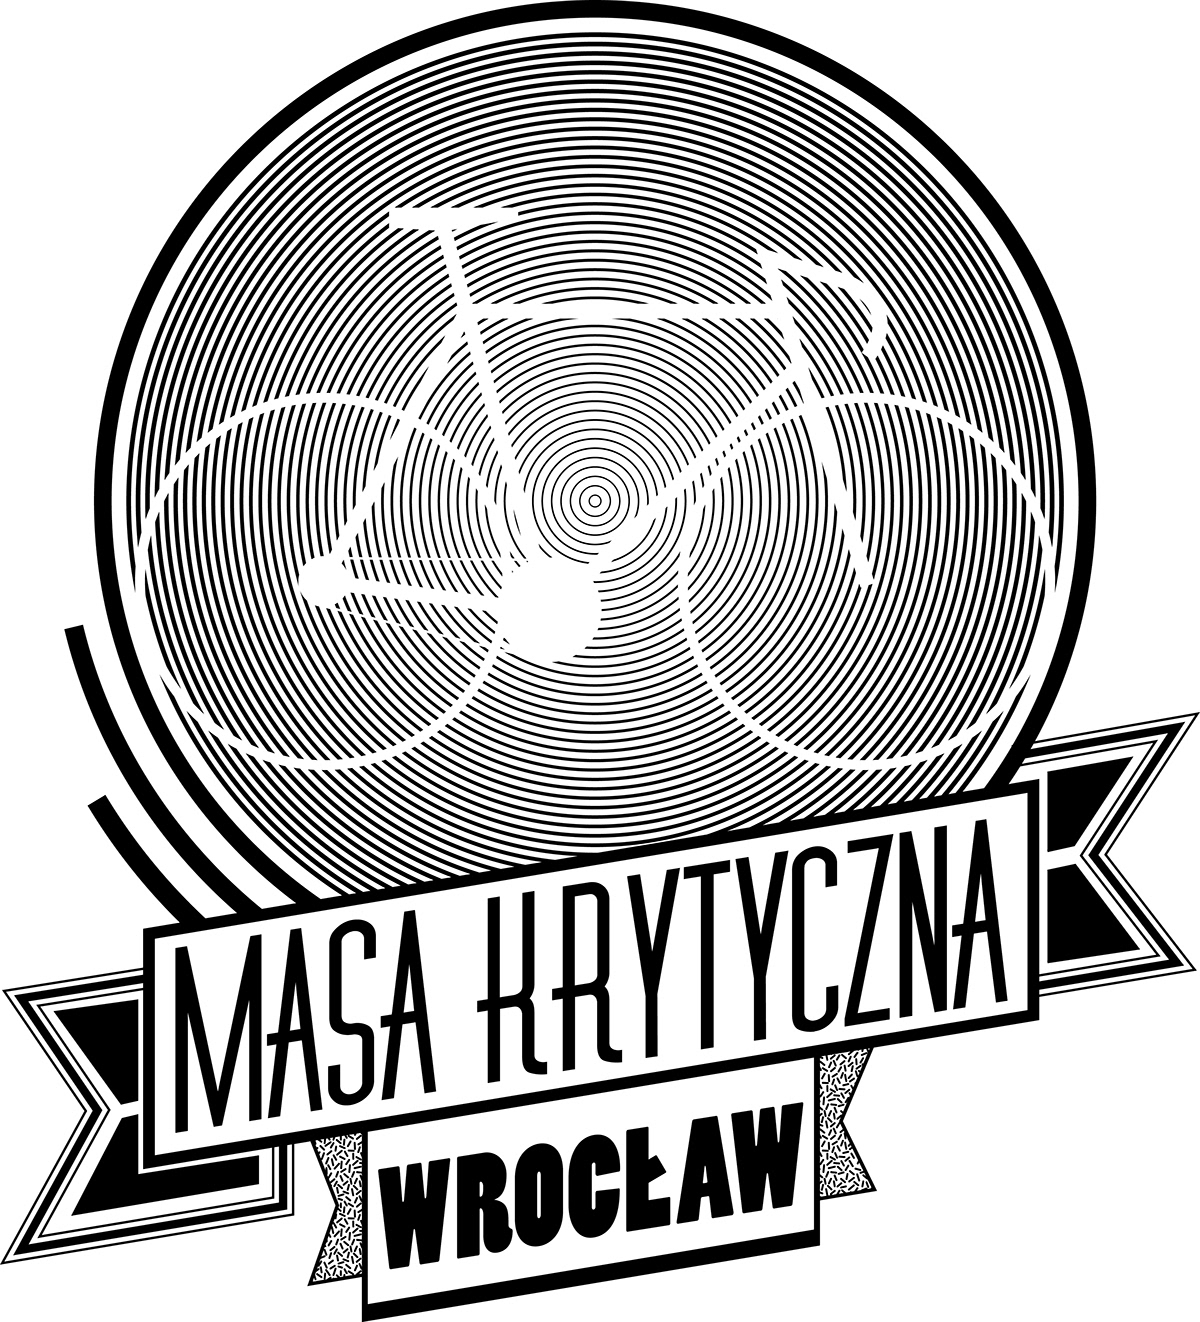 Critical Mass wroclaw tshirt logo